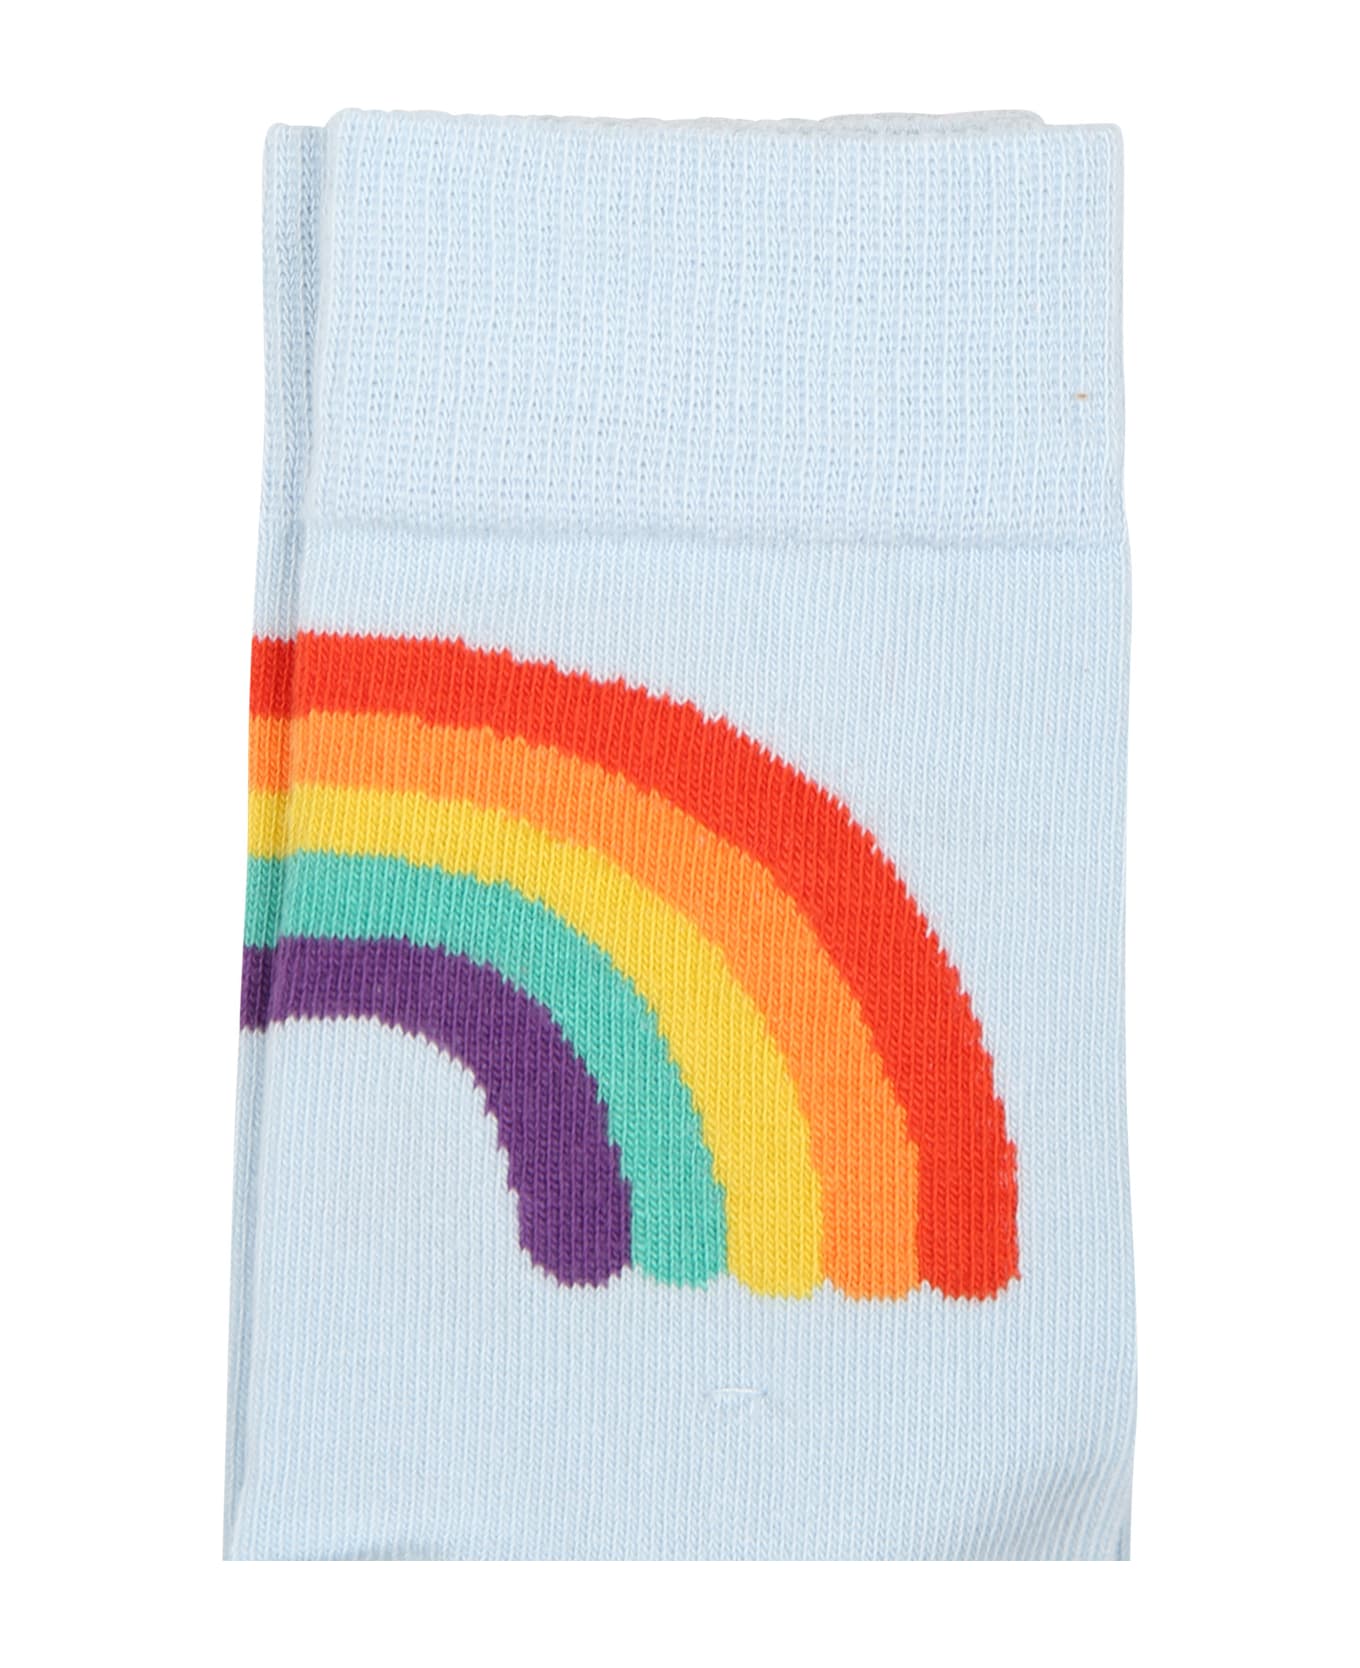 Molo Multicolor Socks Set For Kids - Multicolor シューズ